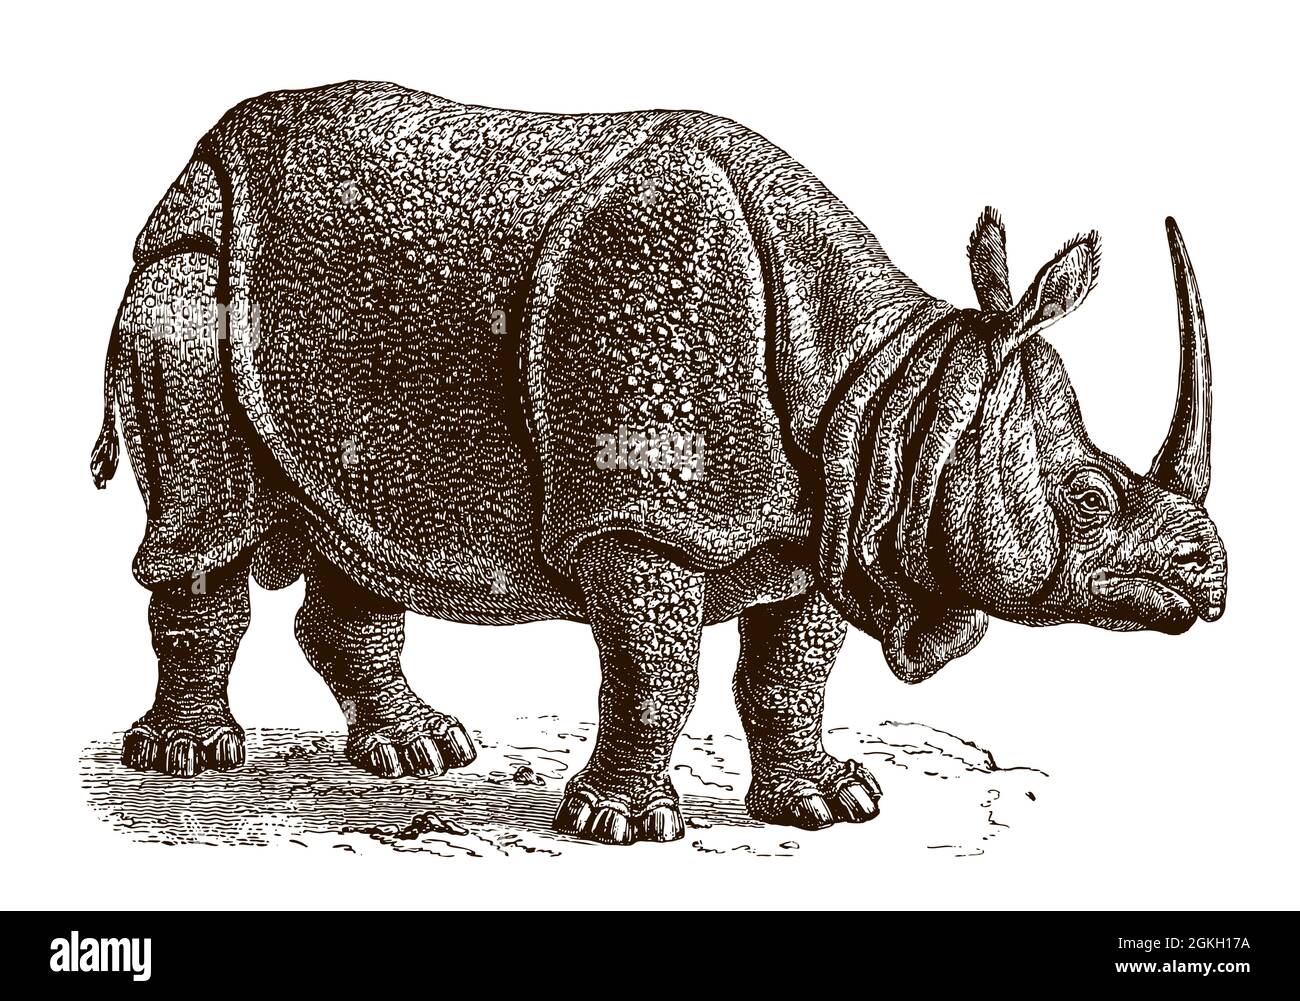 Menace de rhinocéros indiens unicornis en vue latérale, avec une longue corne. Illustration après gravure antique de 19 C. Illustration de Vecteur